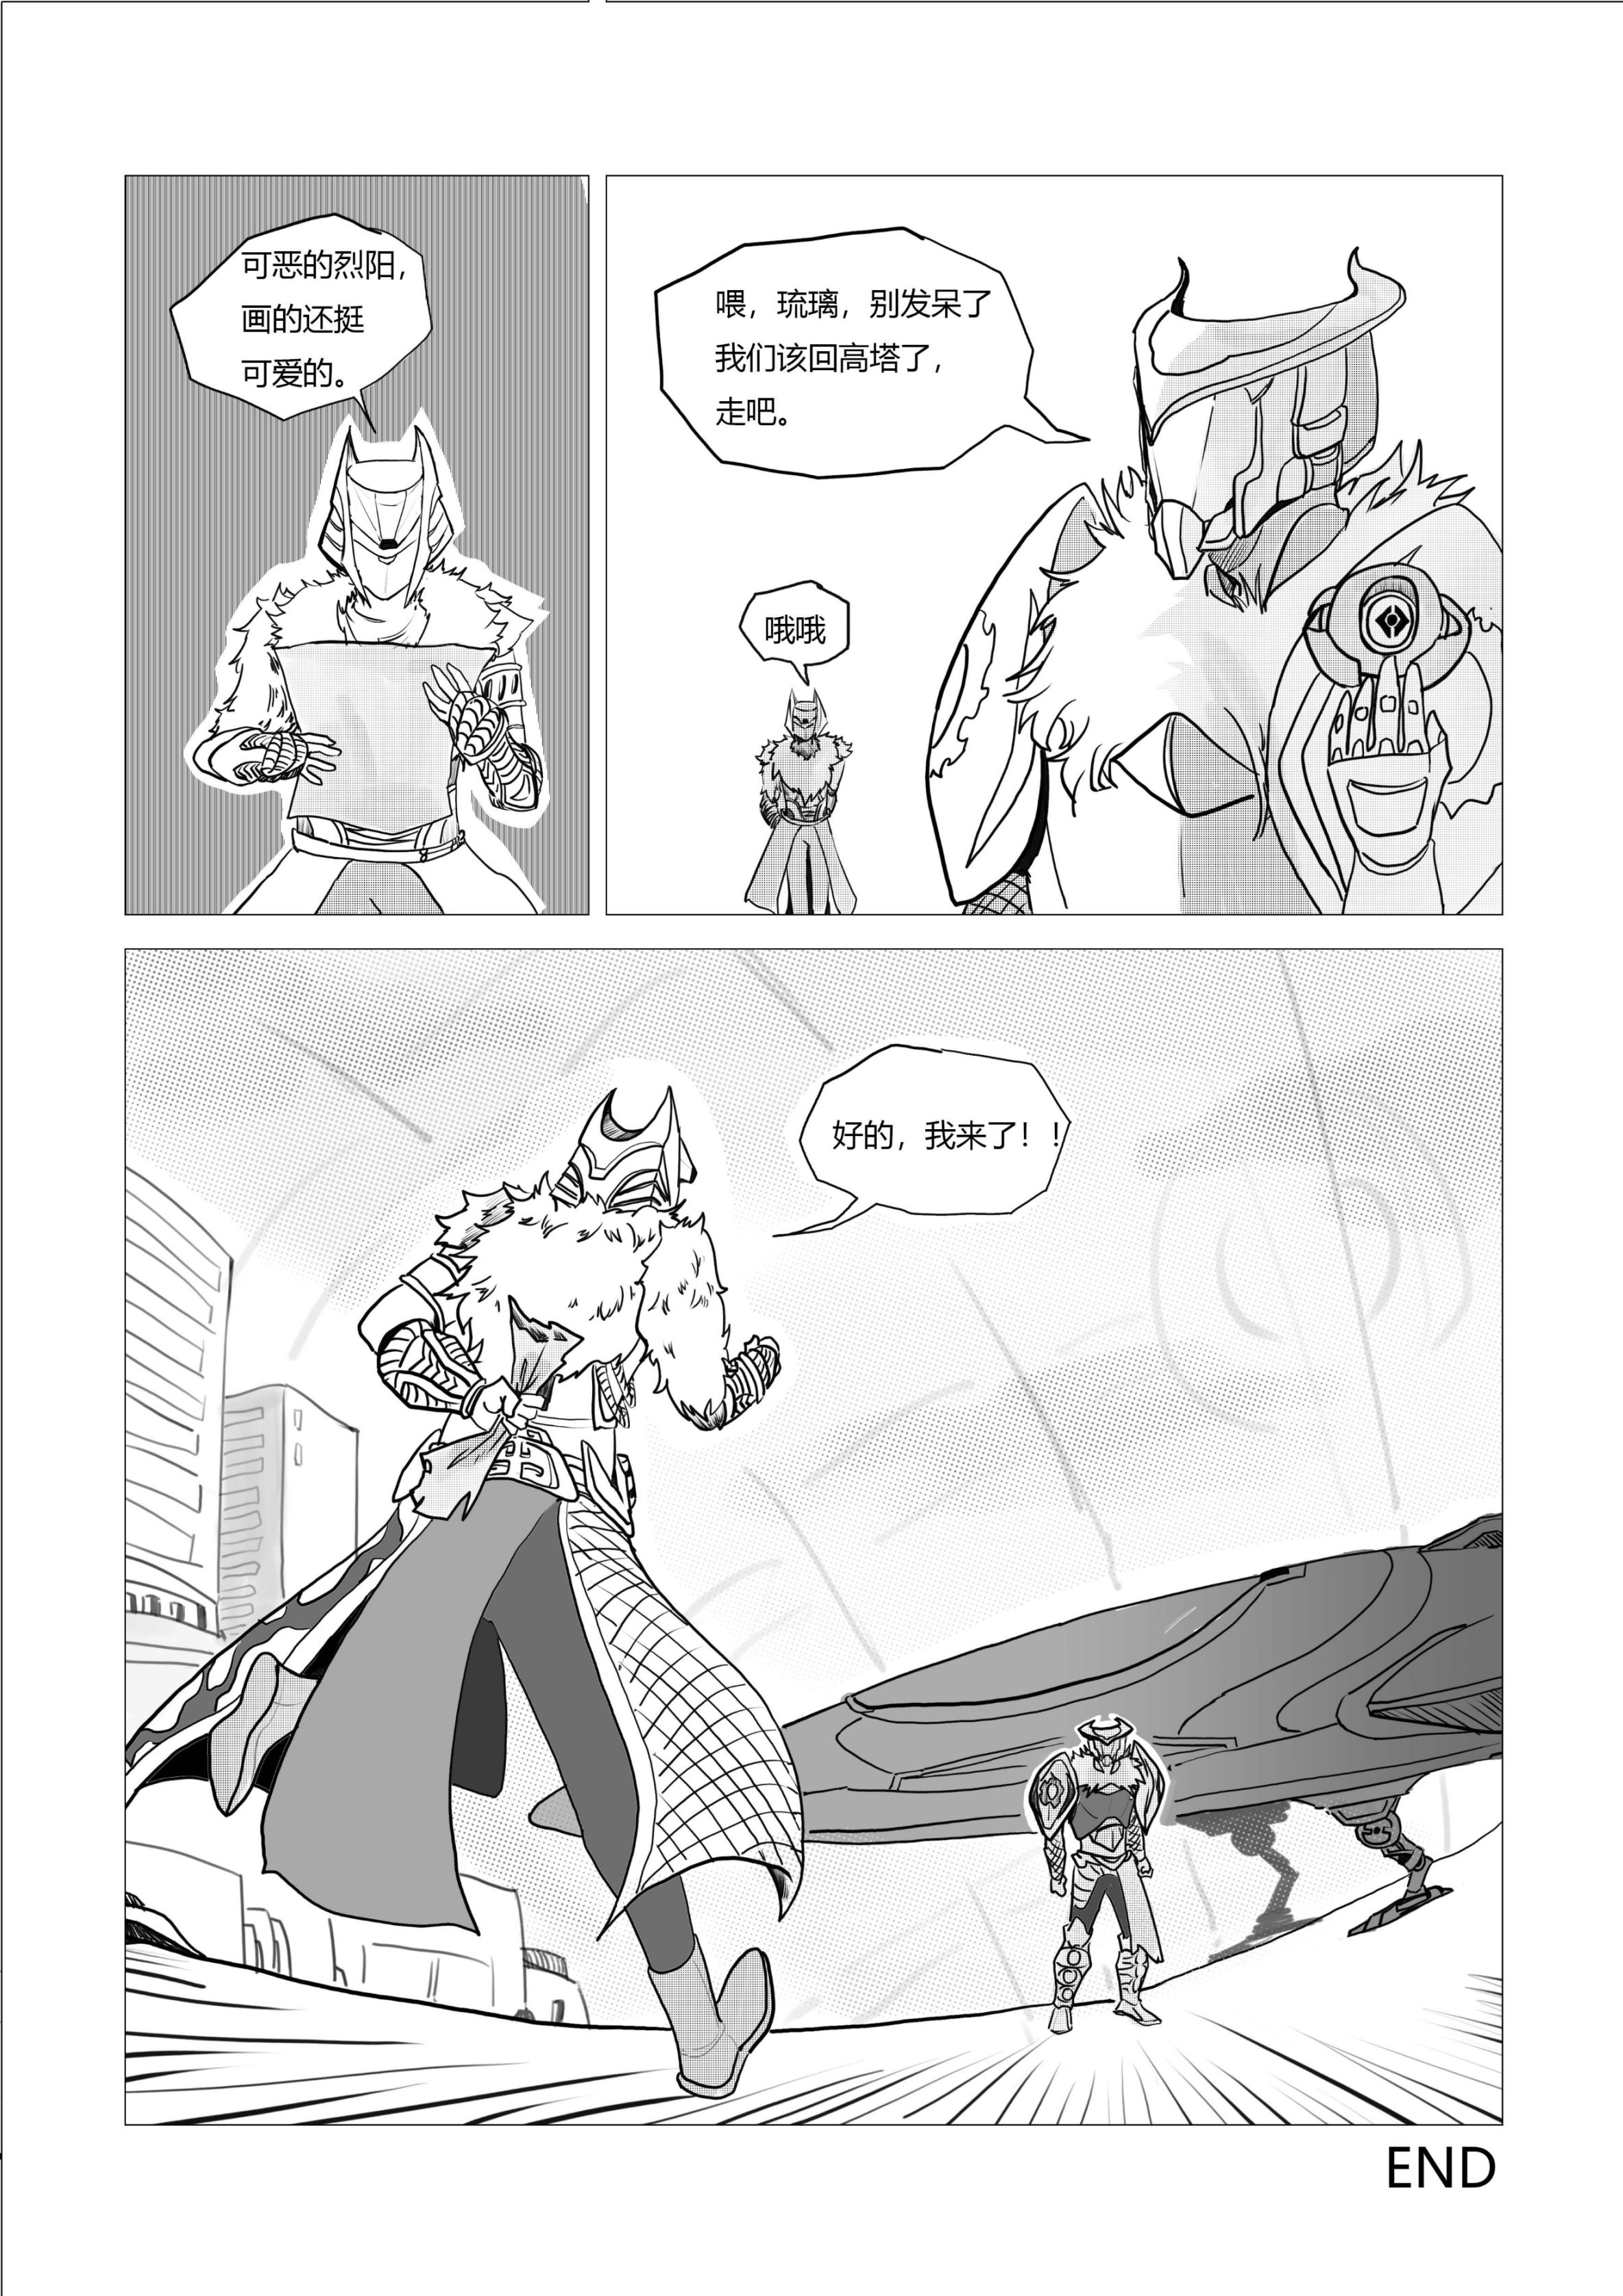 命运2原创战斗漫画（不止于战斗）28页-第27张